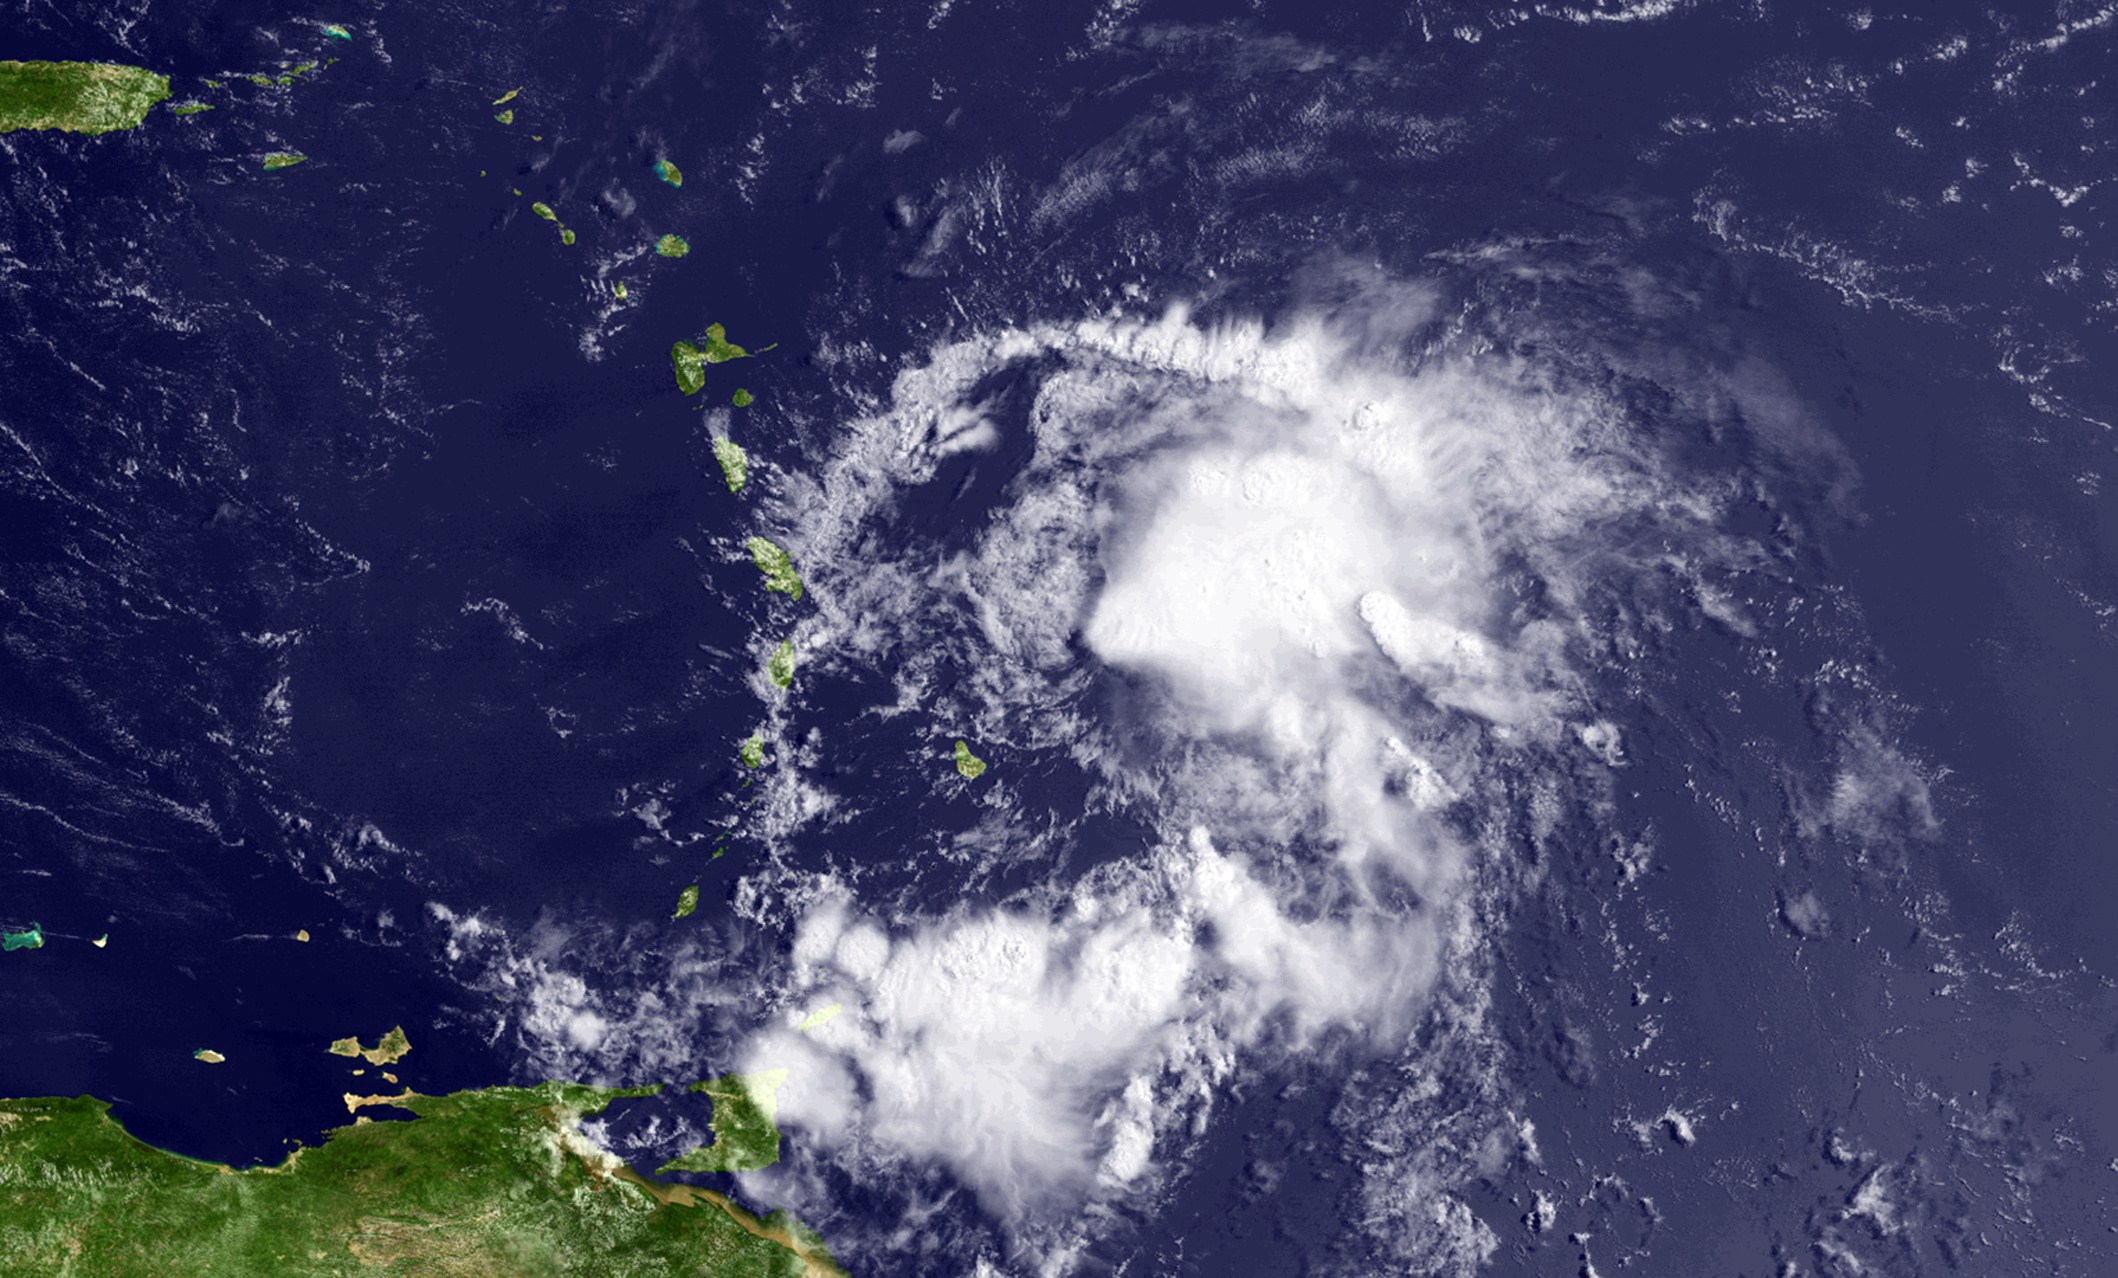 República Dominicana está en alerta roja por paso de tormenta tropical